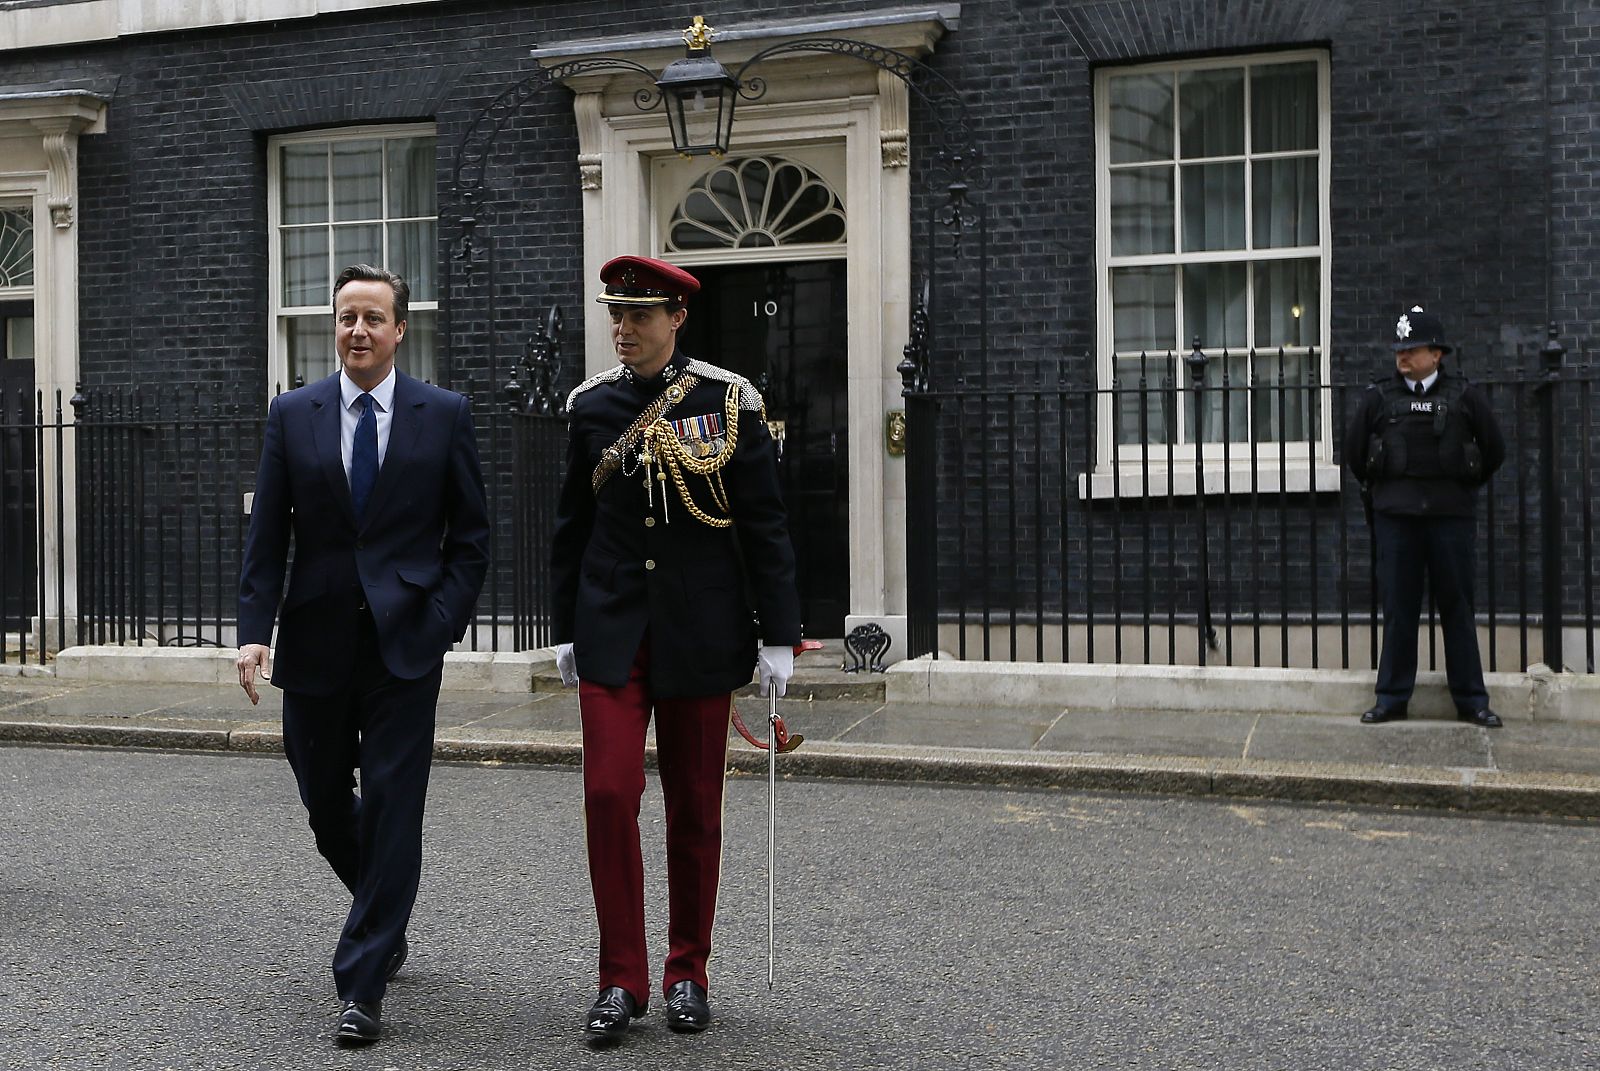 El primer ministro británico, David Cameron, abandona el número 10 de Downing Street acompañado de un soldado